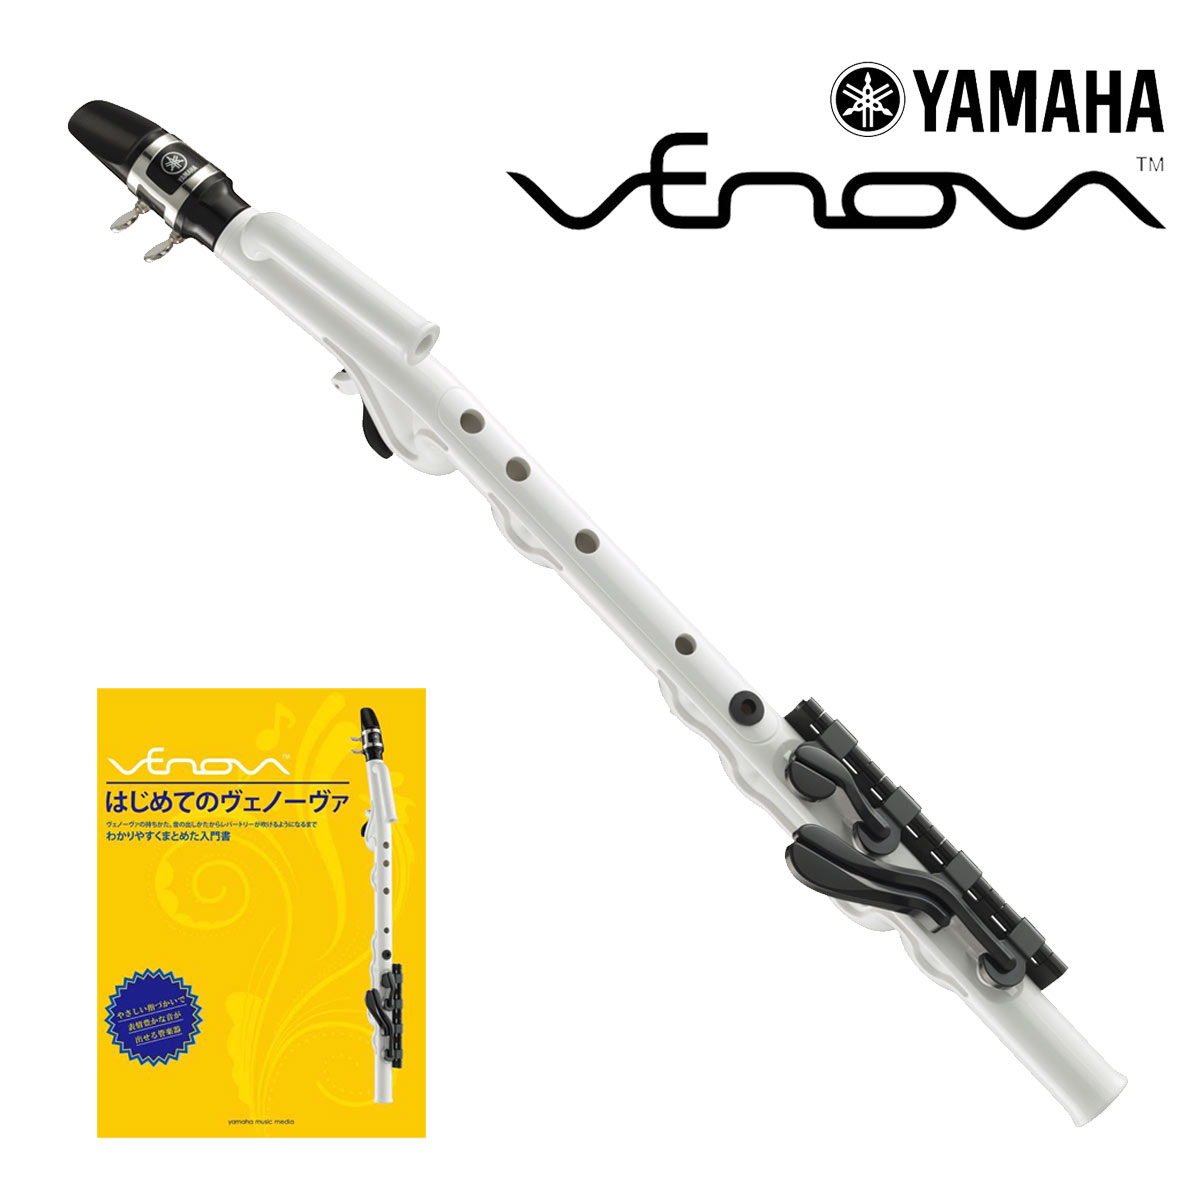 【あす楽対象商品】YAMAHA / Venova ヤマハ ヴェノーヴァ YVS-100 カジュアル管楽器 はじめてのヴェノーヴァ教則SET【YRK】 1